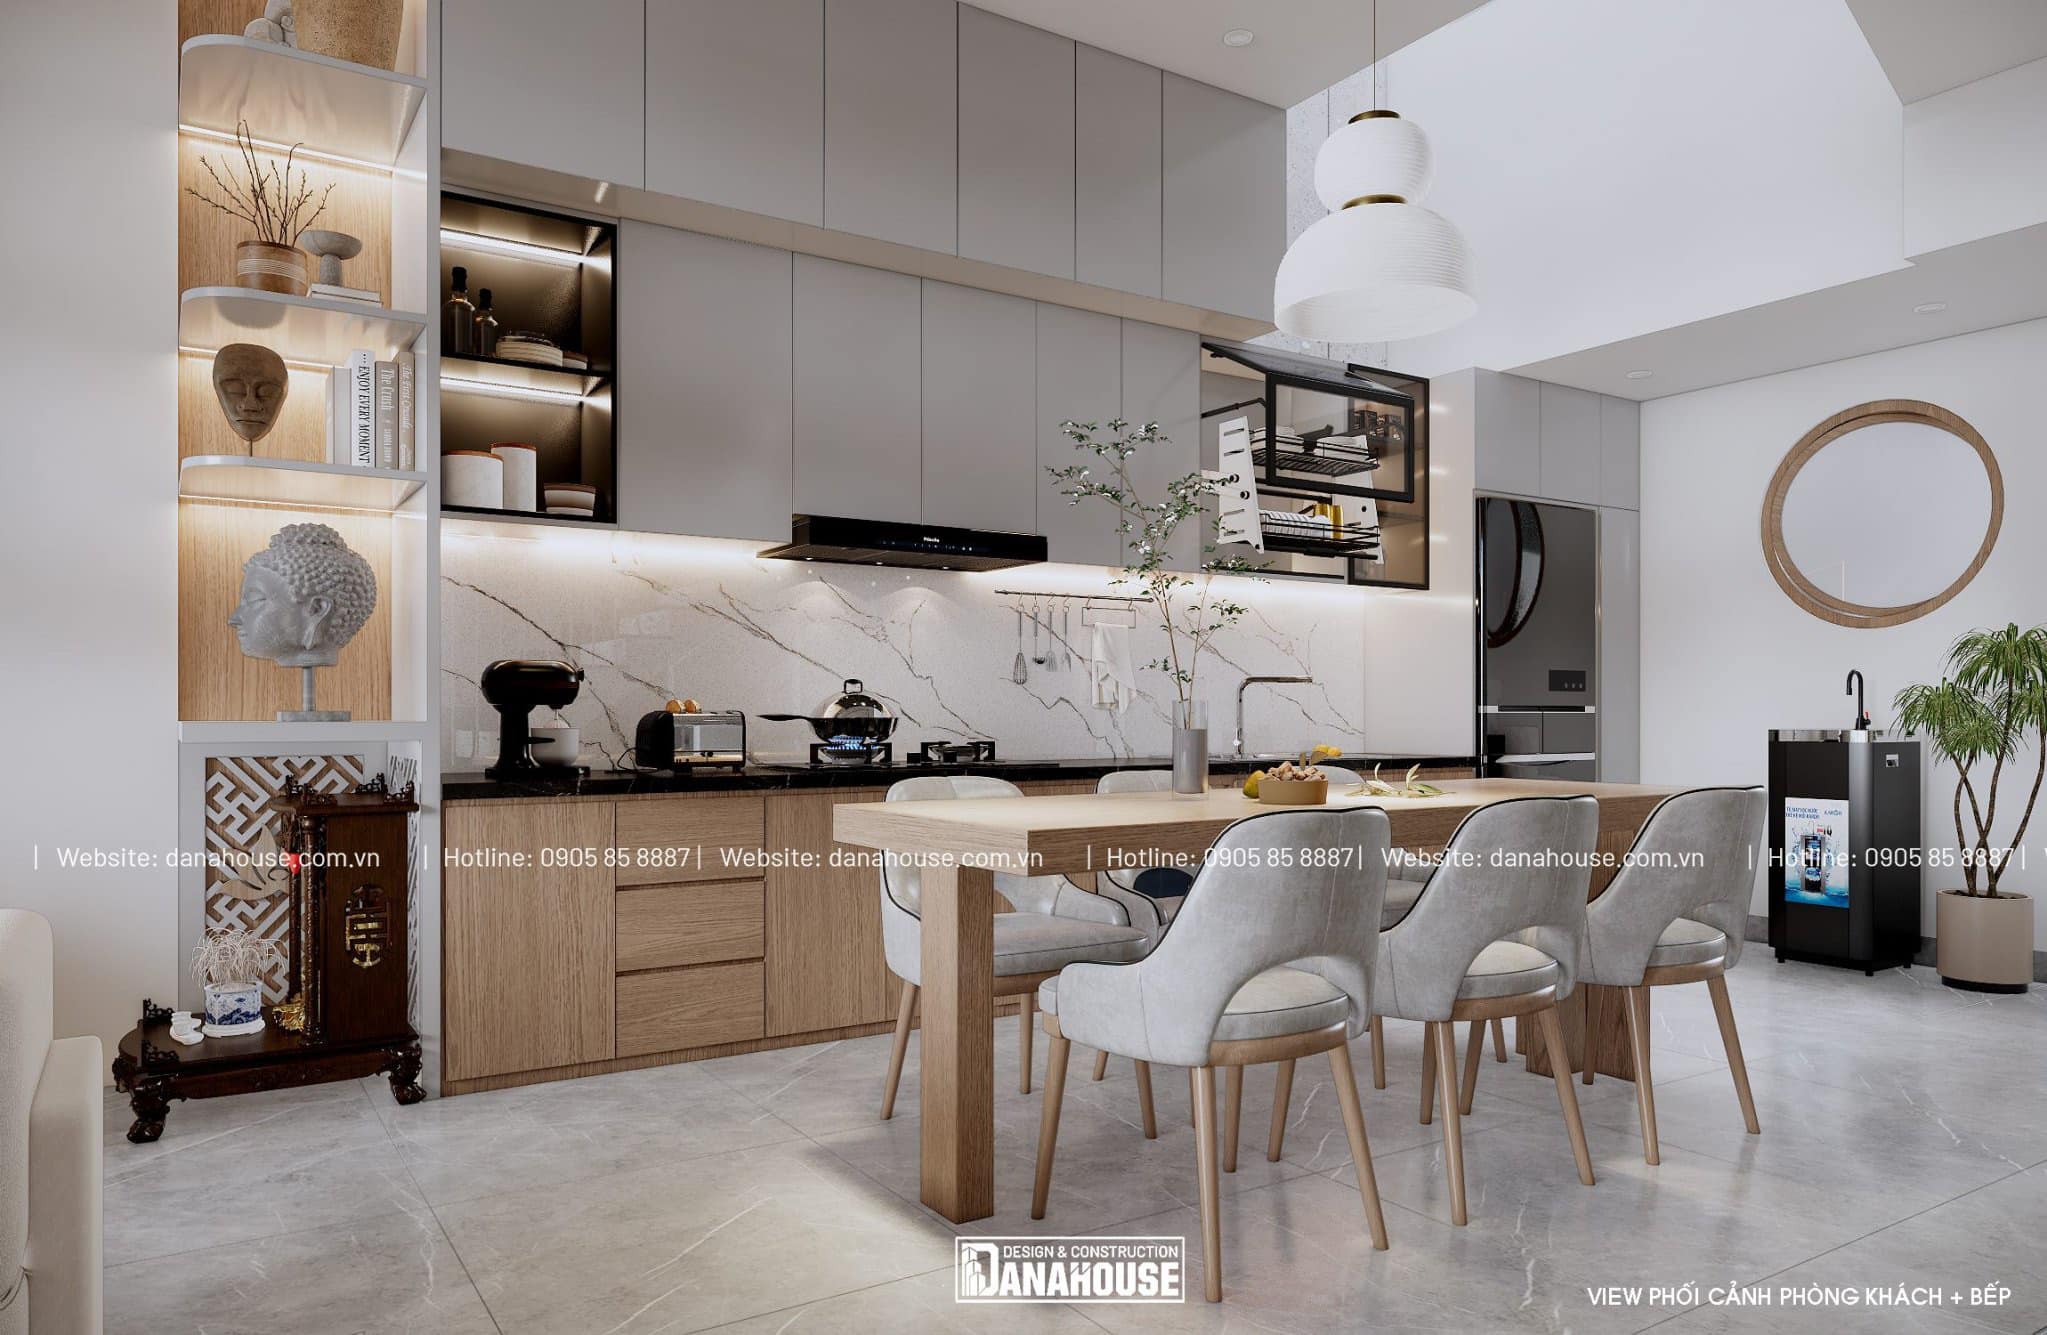 Xác định không gian dành cho nhà bếp để bố trí nội thất phù hợp 